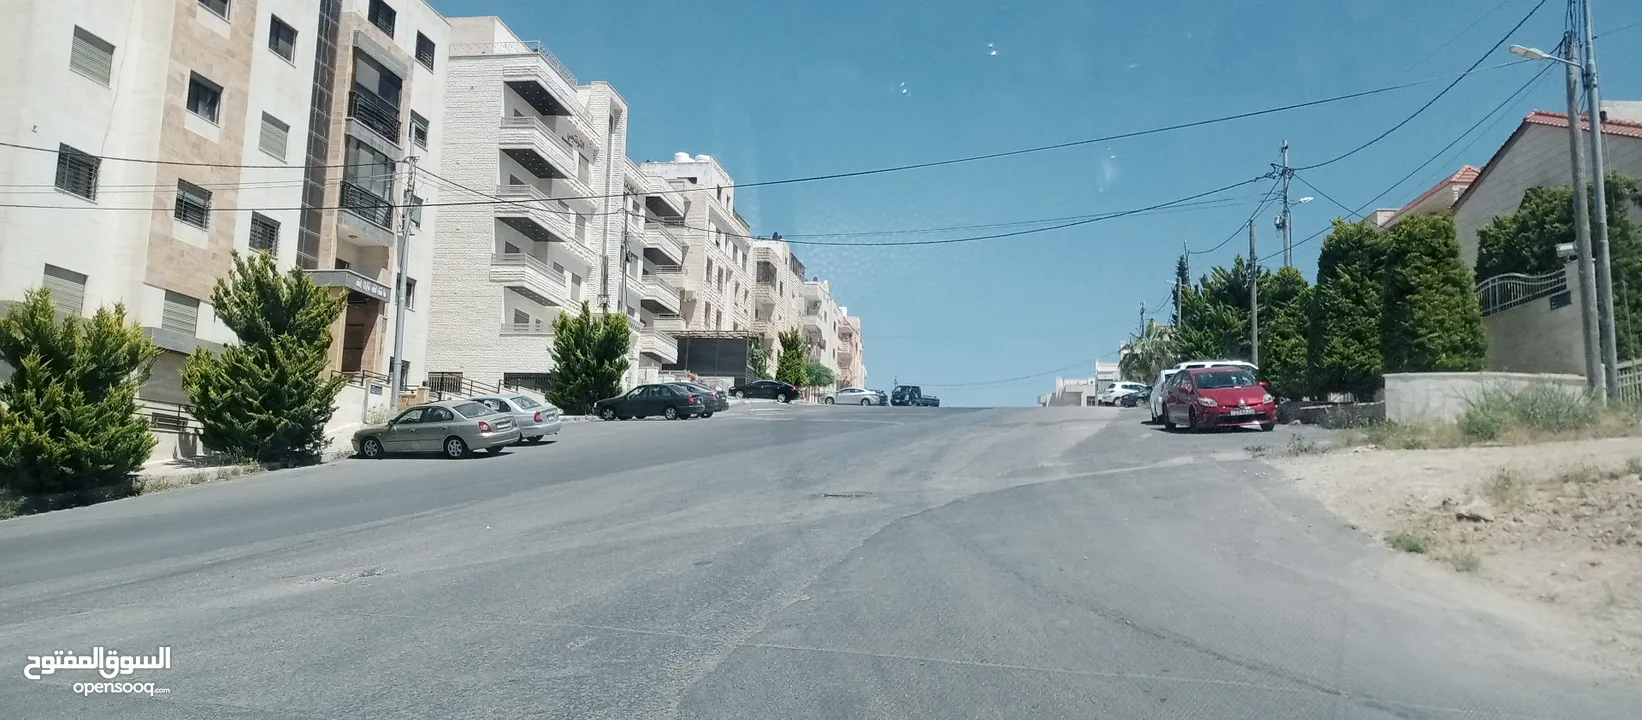 أرض للبيع في أبو نصير قرب الأكاديمية البحرية شارع 30